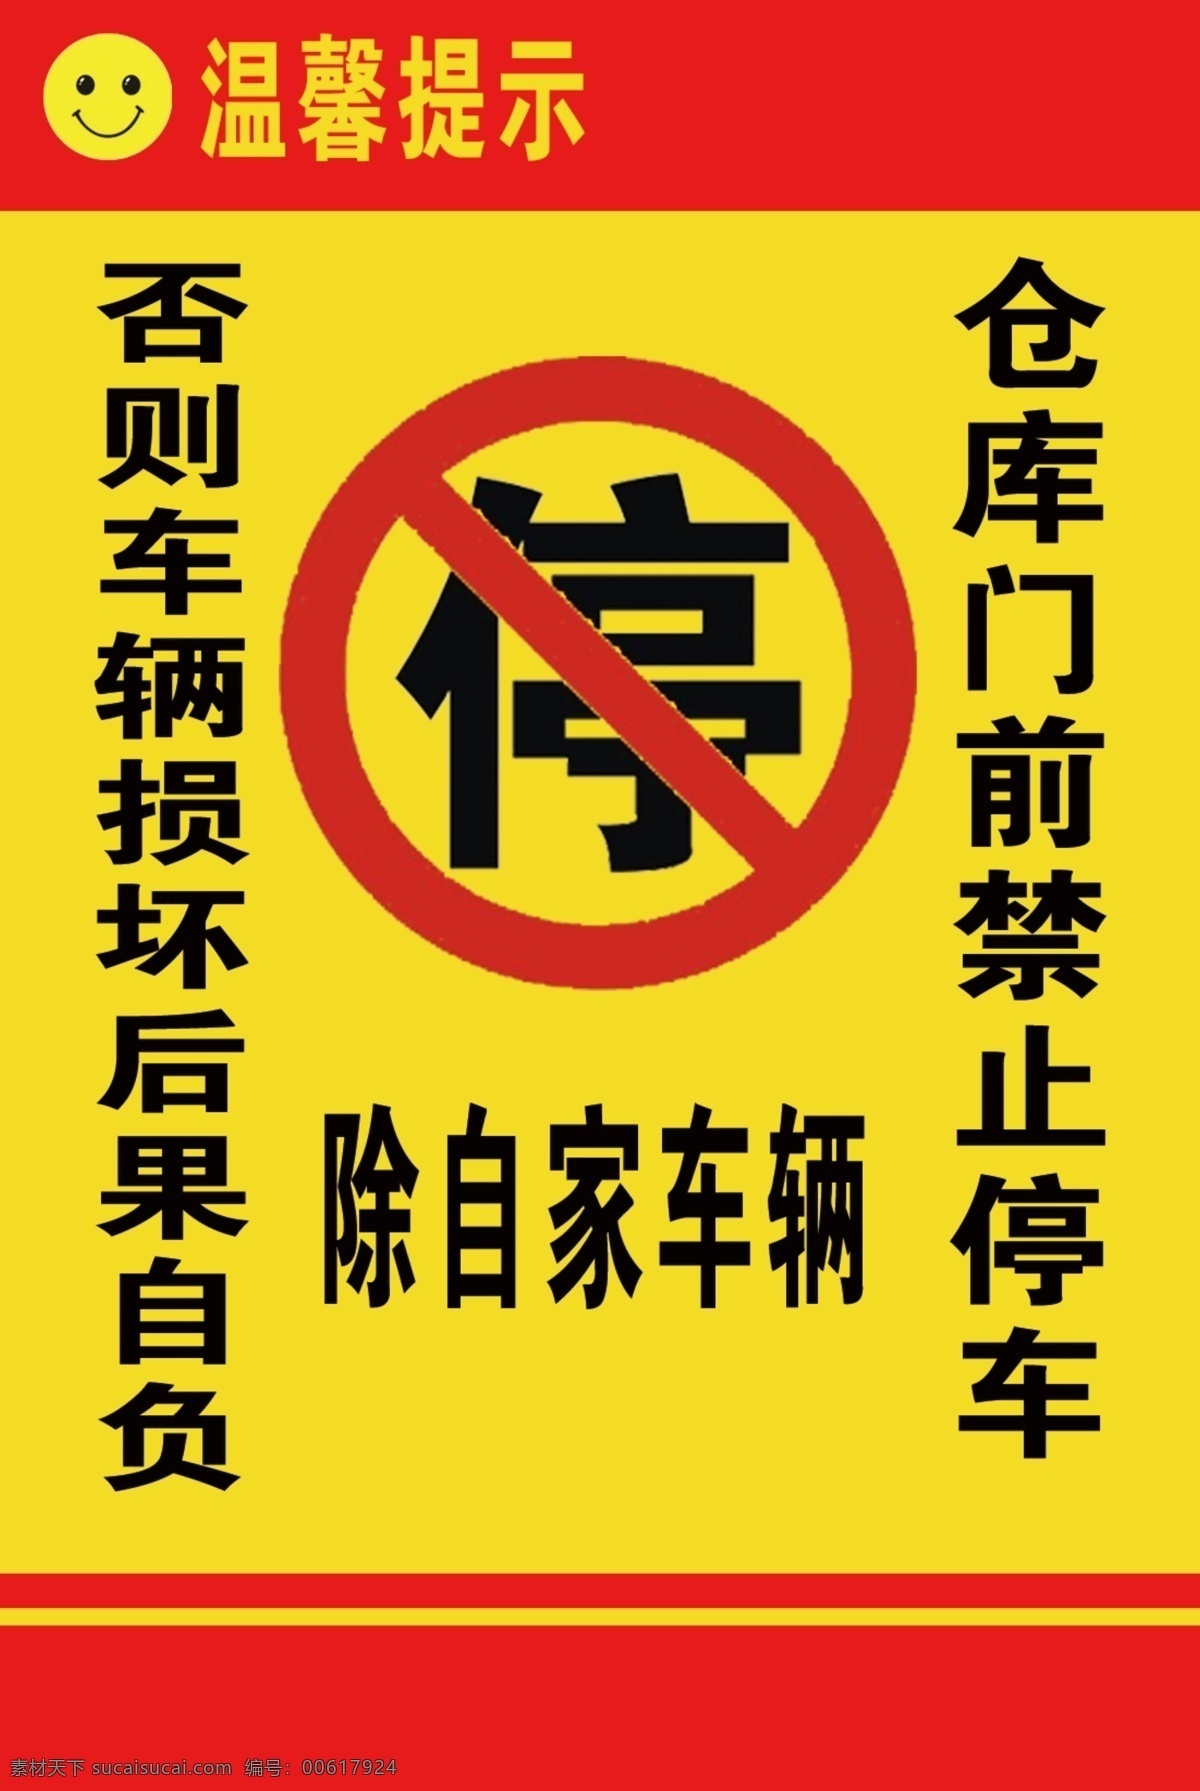 禁止停车 提示 仓库 门前禁止 停车 禁停标志 标志图标 公共标识标志